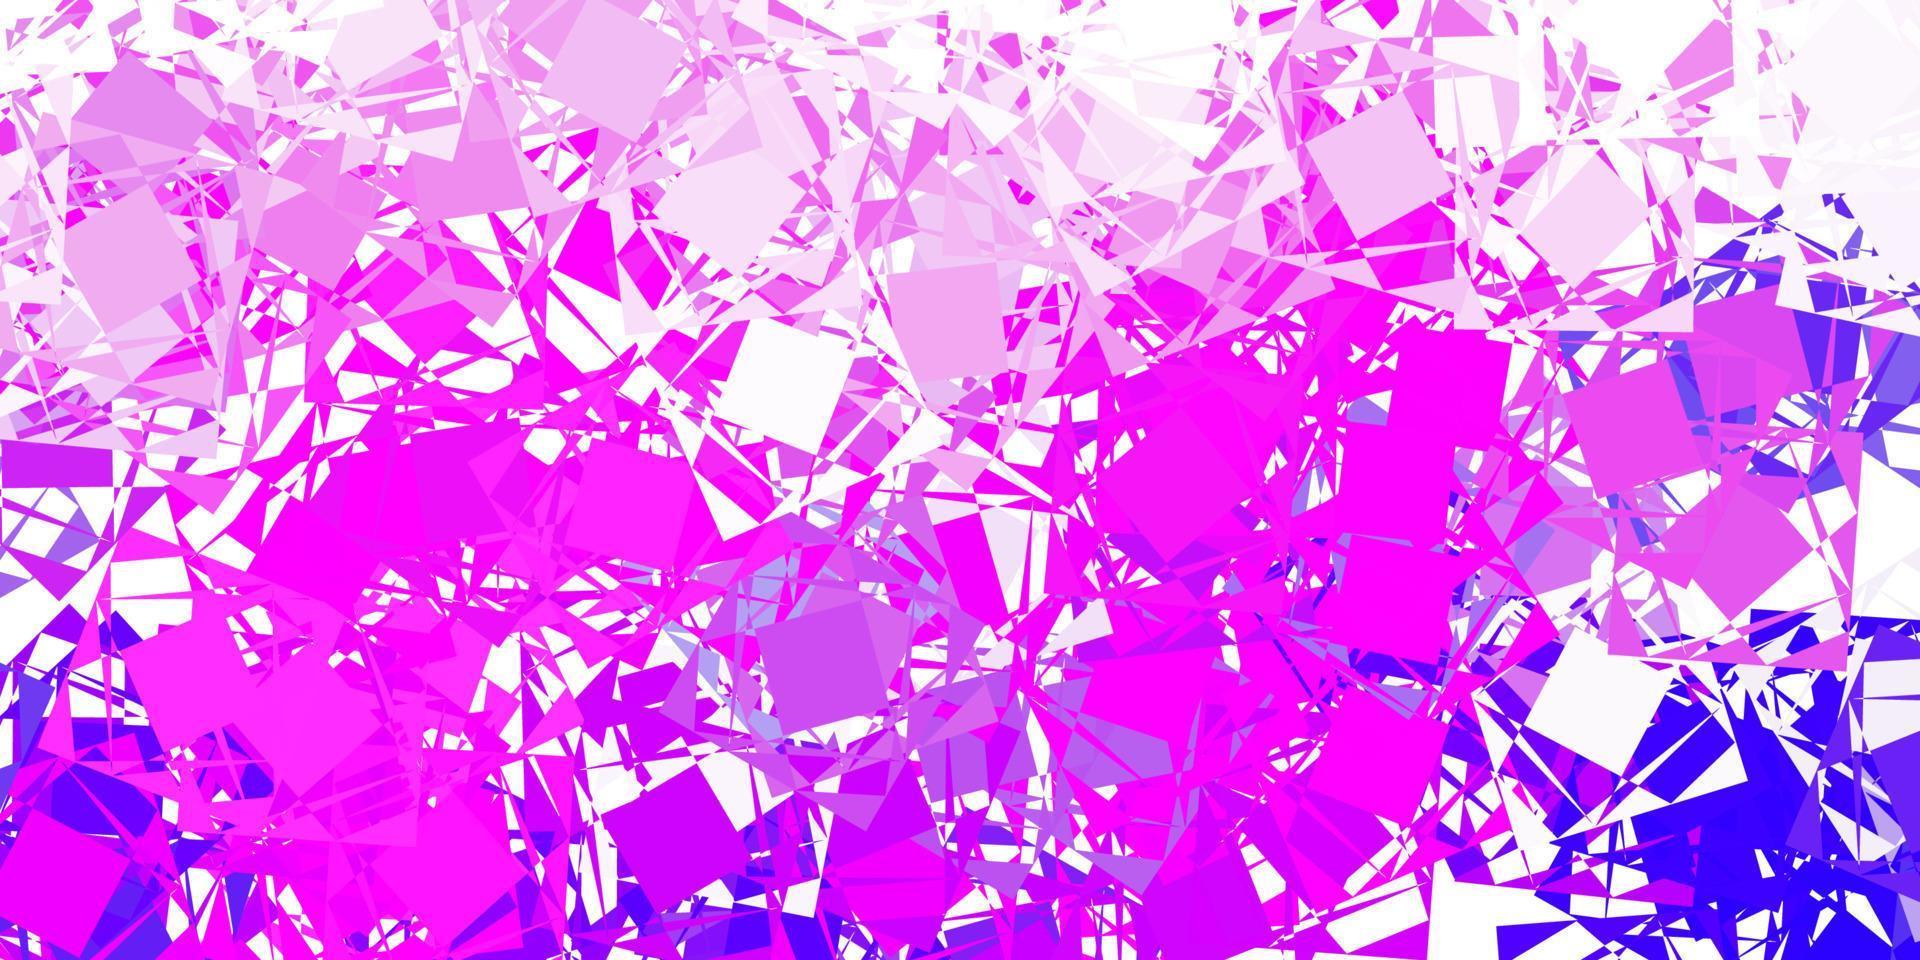 ljuslila, rosa vektorbakgrund med månghörniga former. vektor